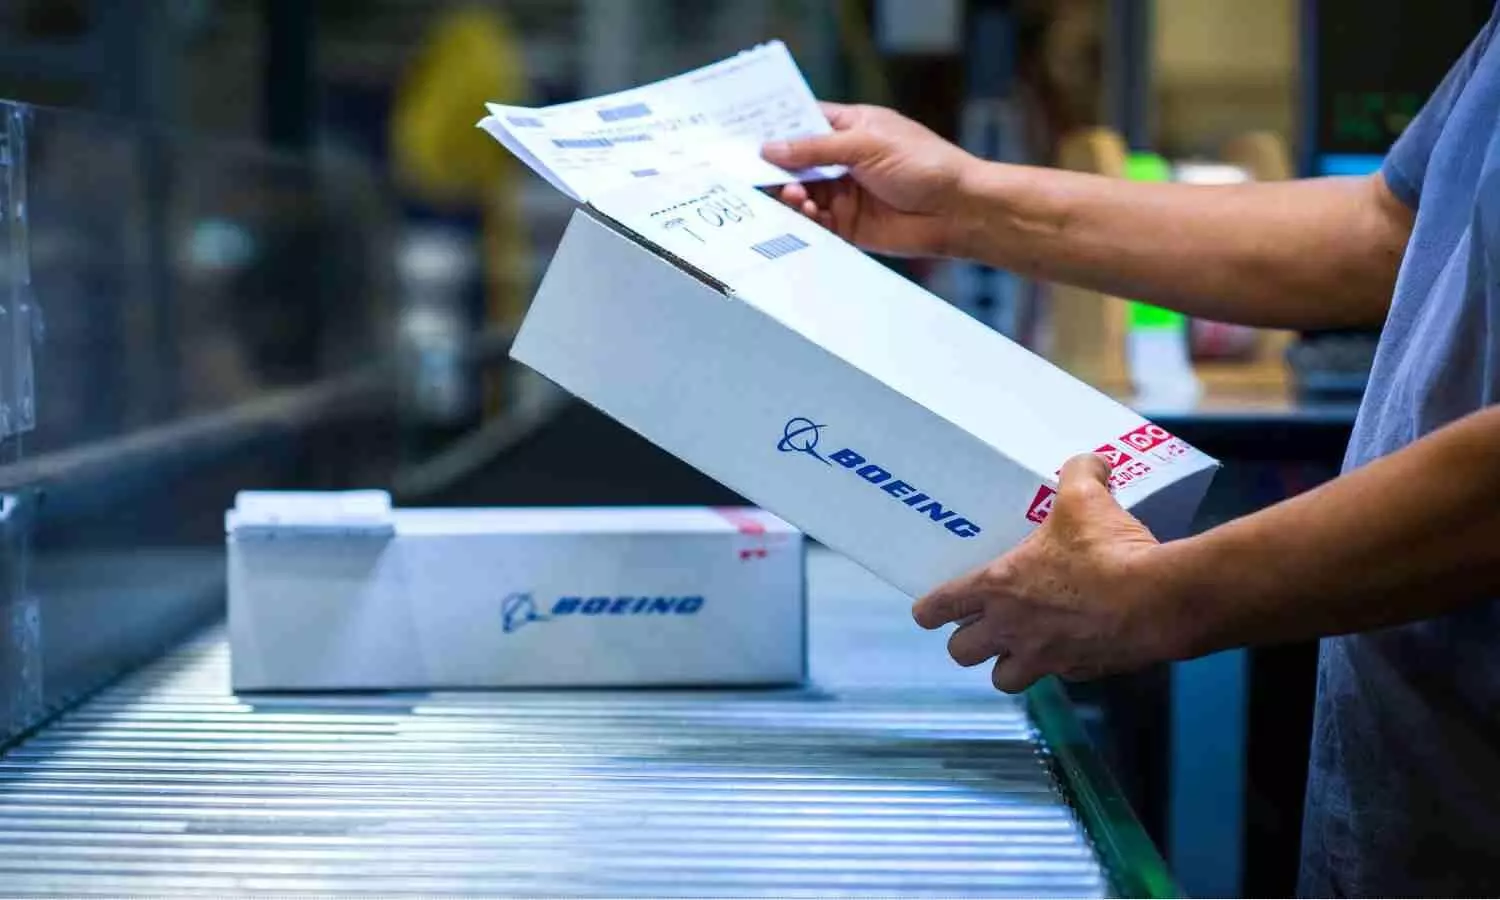 Boeing Online Parts Orders